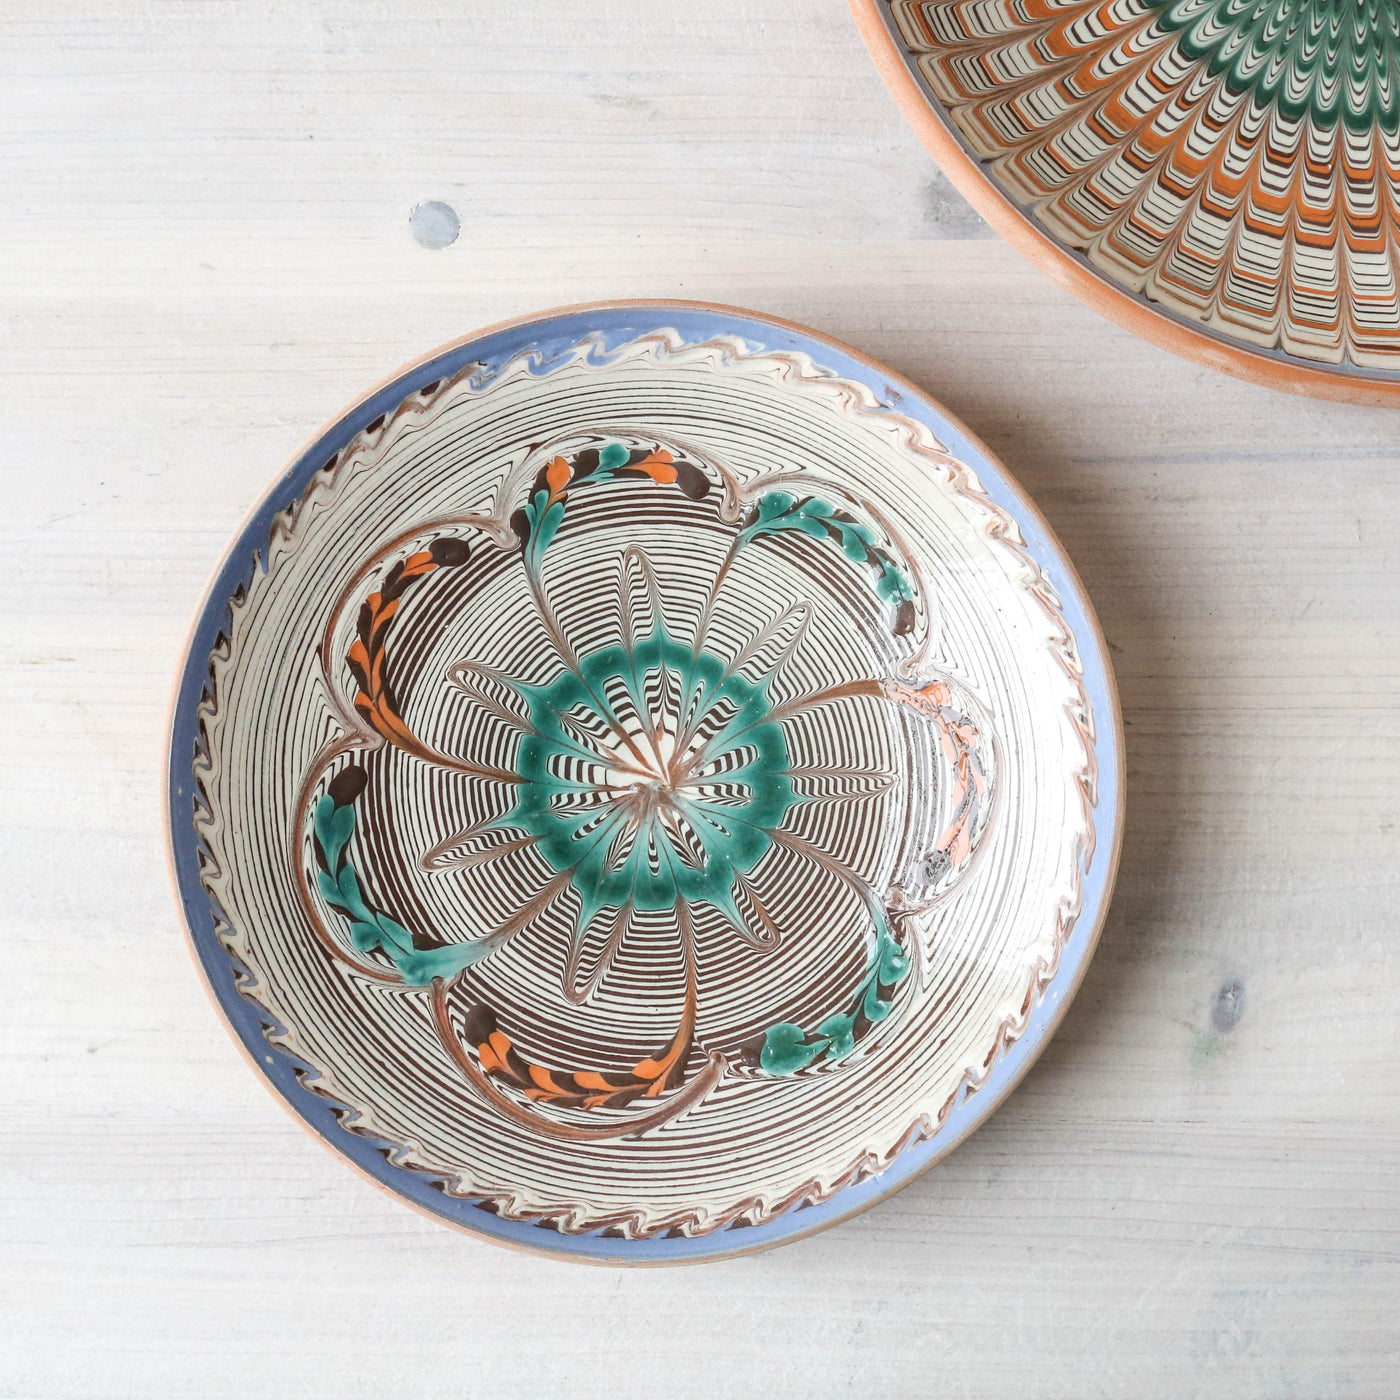 19cm Horezu Stoneware Dish - Turquoise & Orange